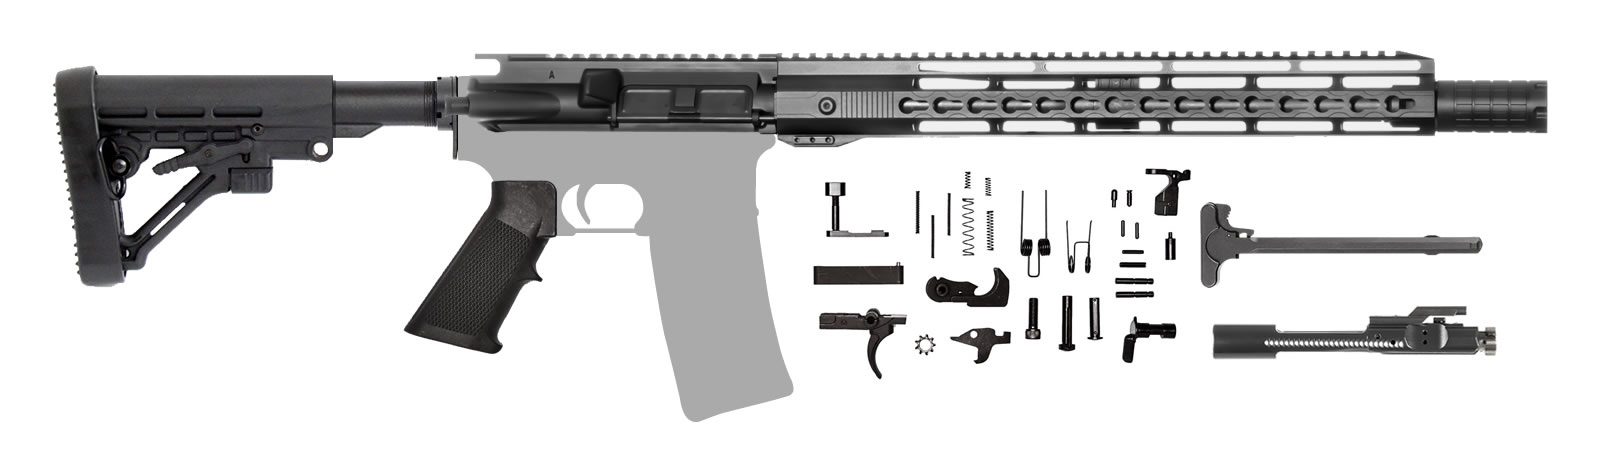 AR-15 Rifle Kit 14.5